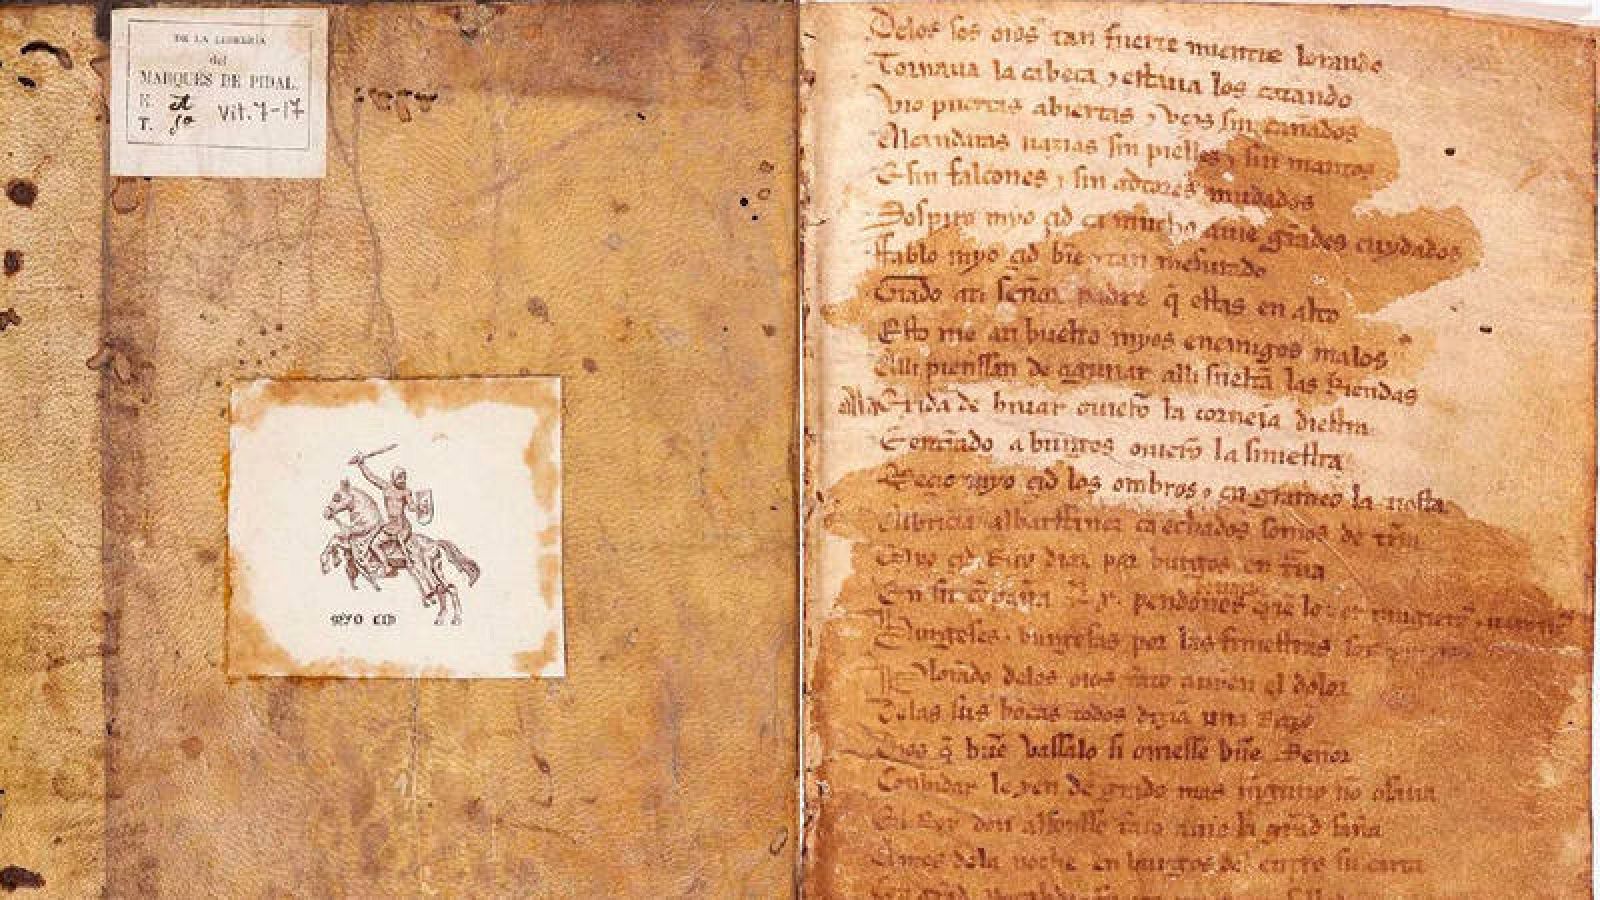 Abreviatura Teseo Pantano Exposiciones: La Biblioteca Nacional abre el tesoro del Cid